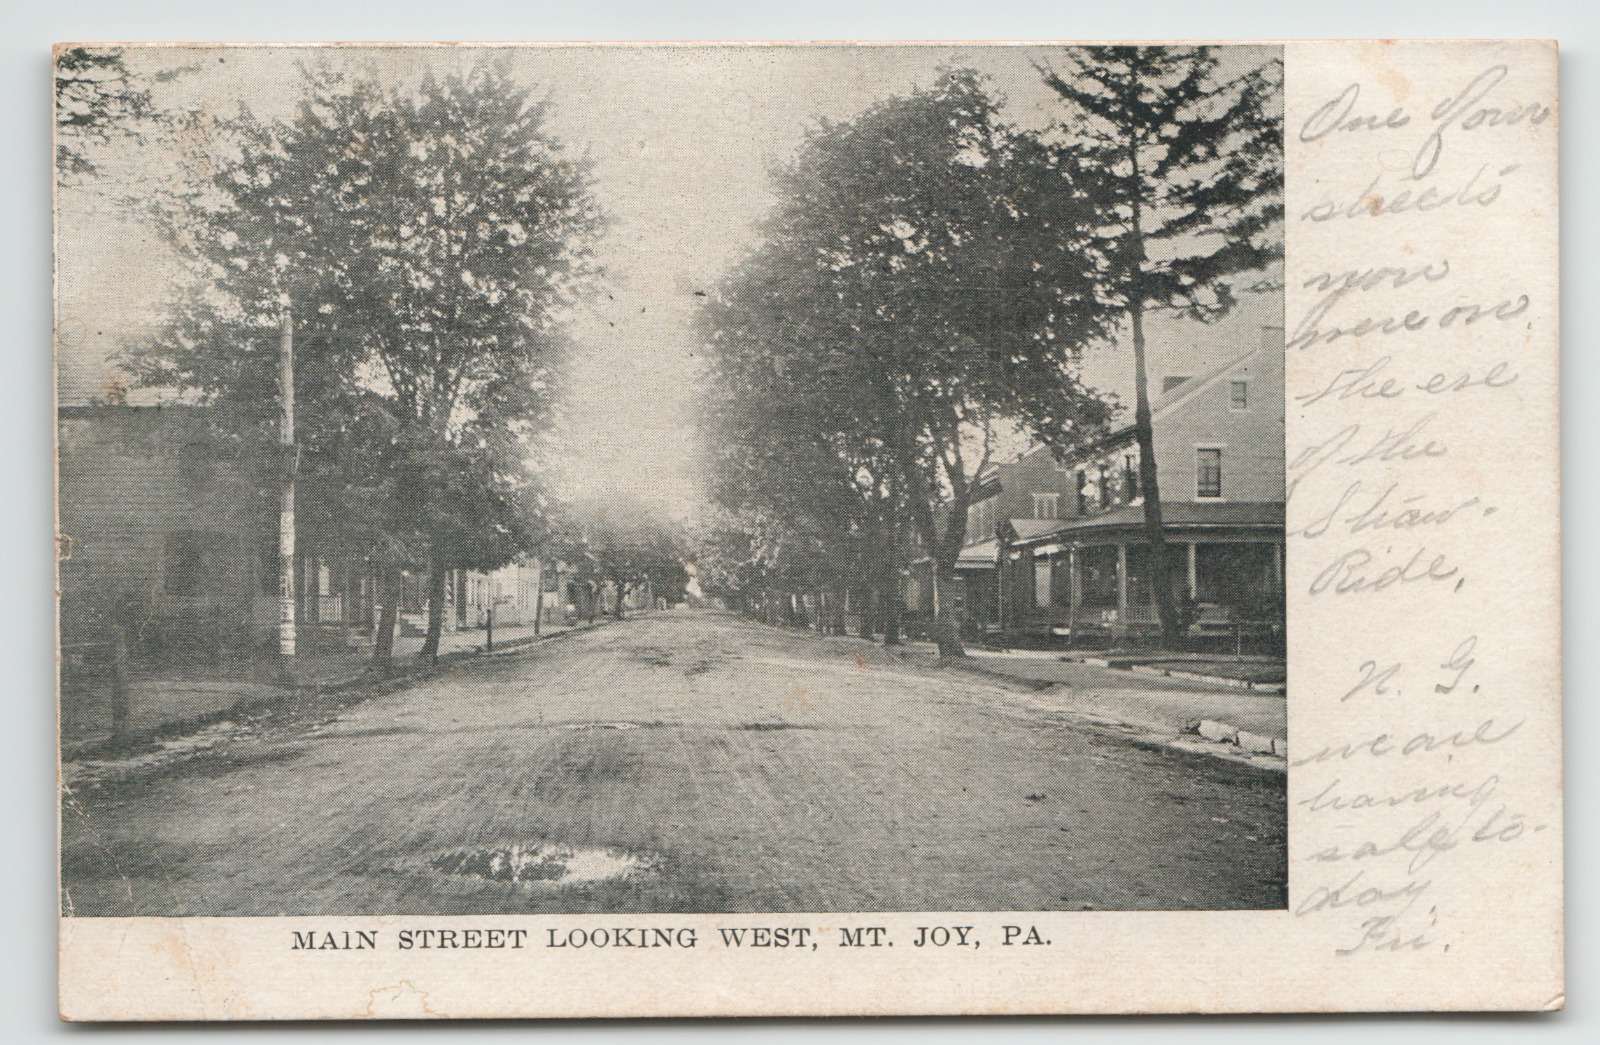 Postcard Vintage 1908 Main Street Looking West in Mt. Joy, PA. Dirt Street